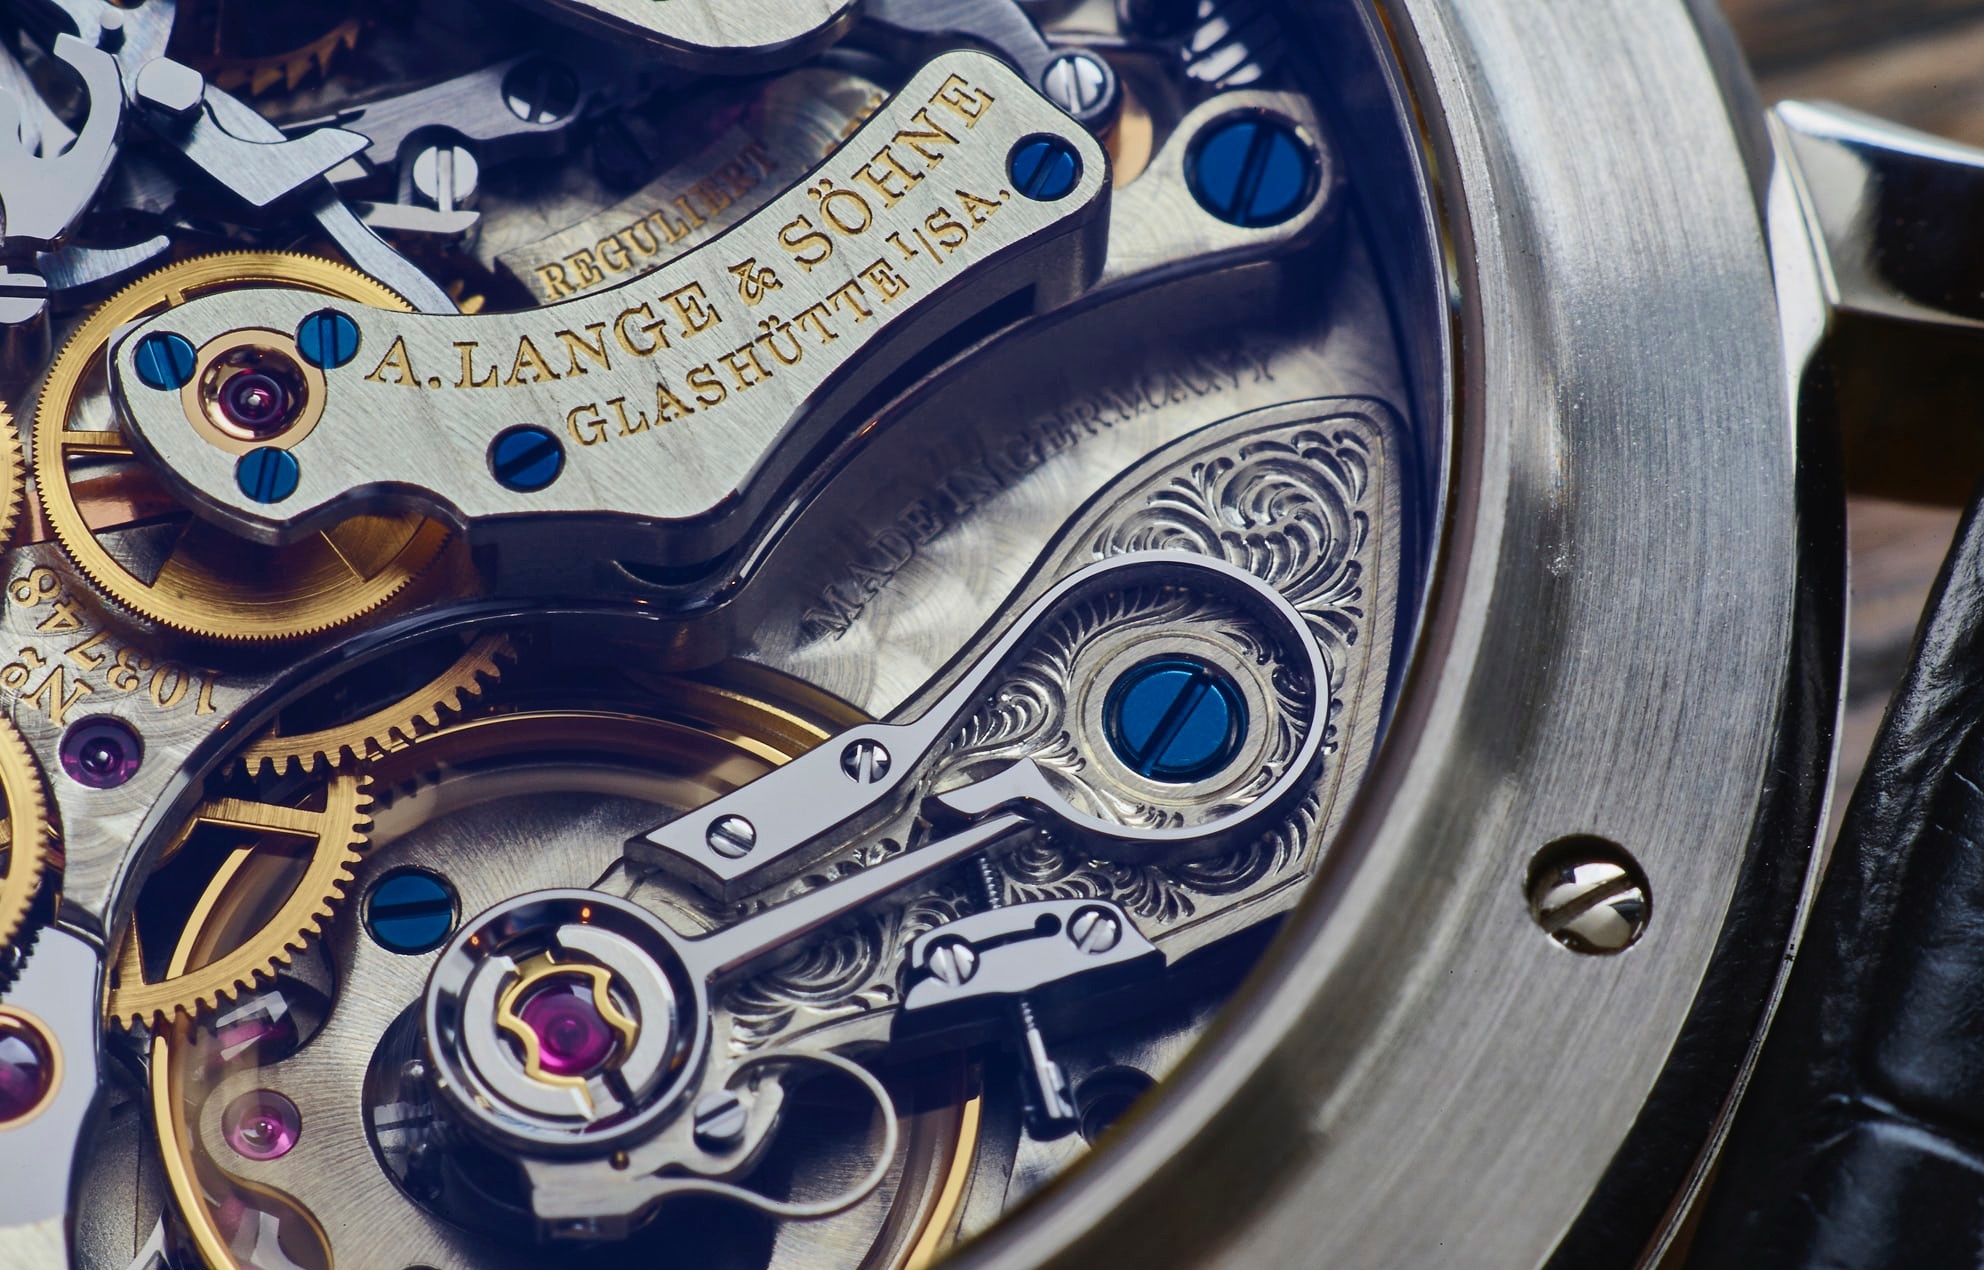 So sánh những huyền thoại đồng hồ Chronograph - Phần 2: A. Lange & Söhne Datograph Up/Down và Vacheron Constantin Harmony Chronograph